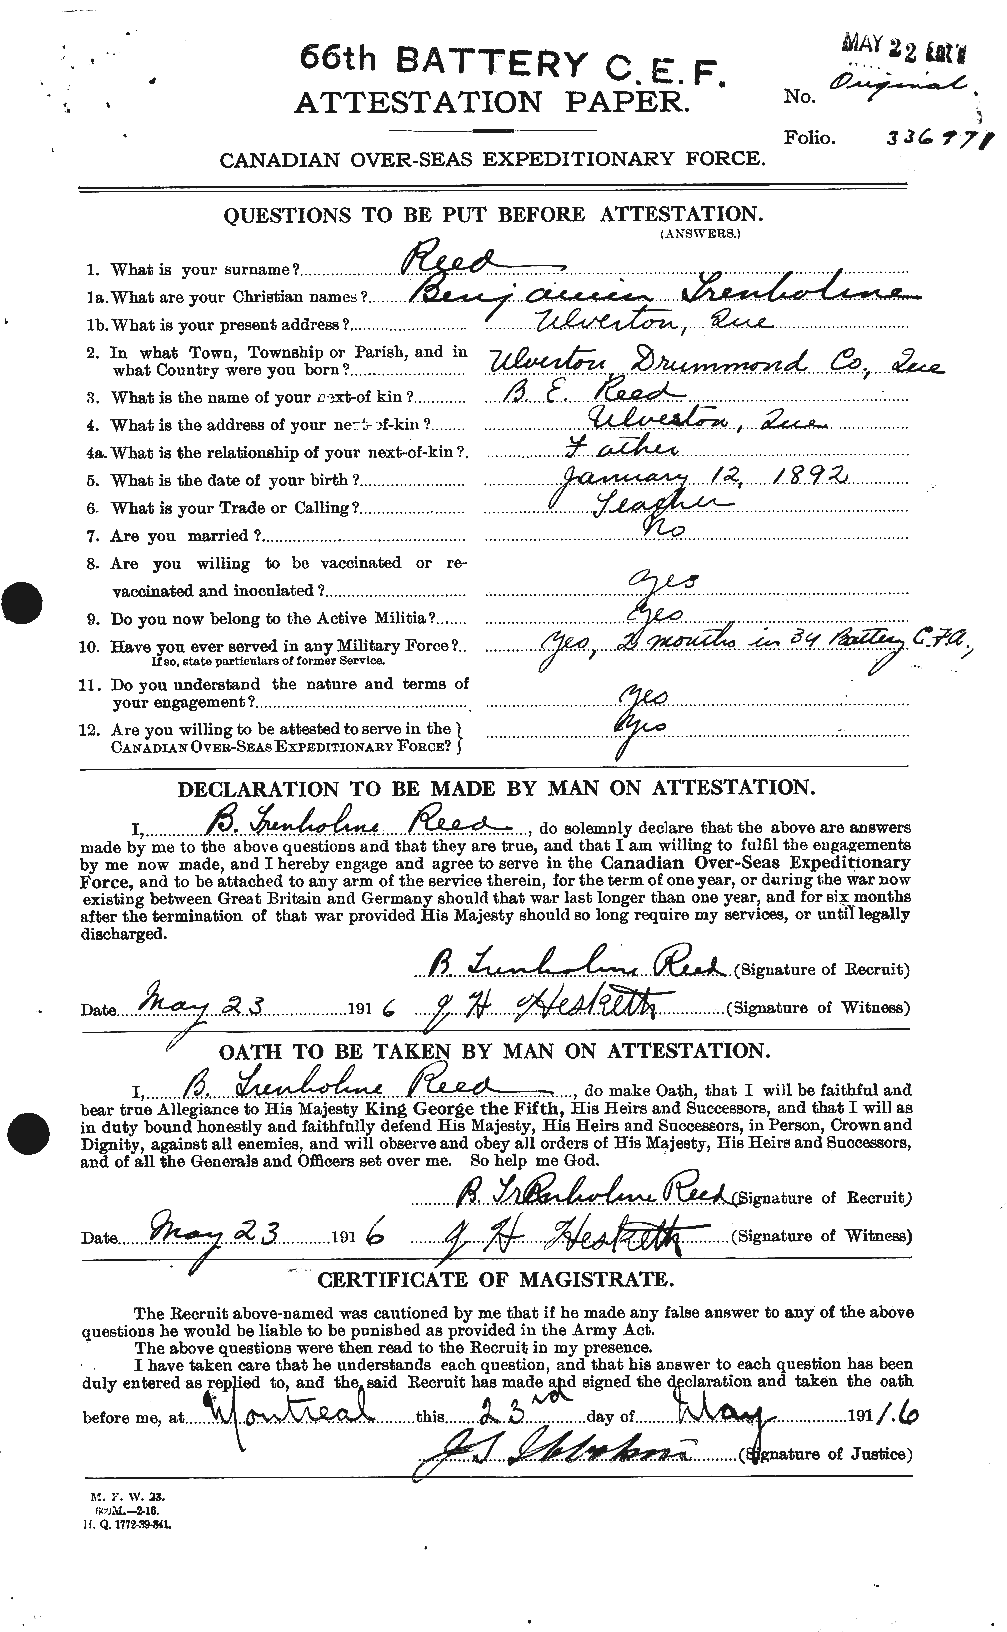 Dossiers du Personnel de la Première Guerre mondiale - CEC 596318a